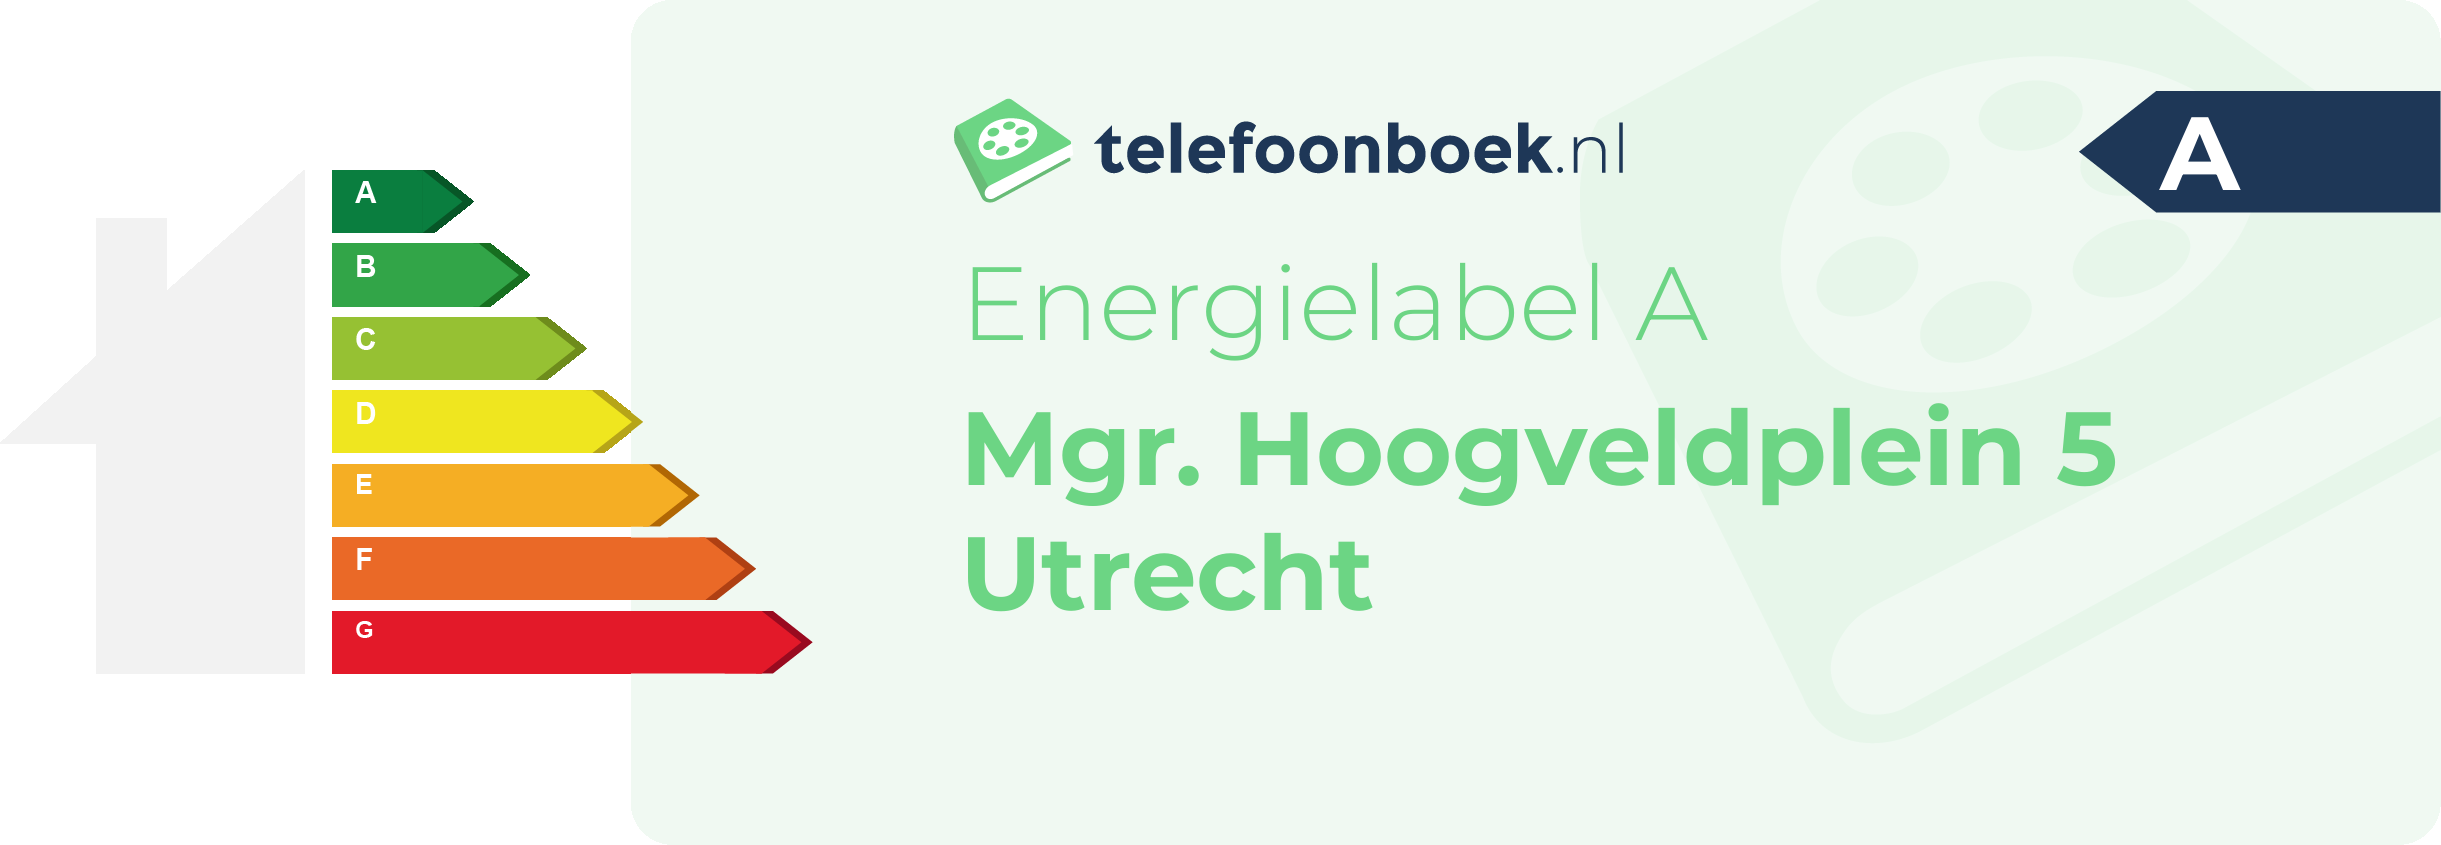 Energielabel Mgr. Hoogveldplein 5 Utrecht